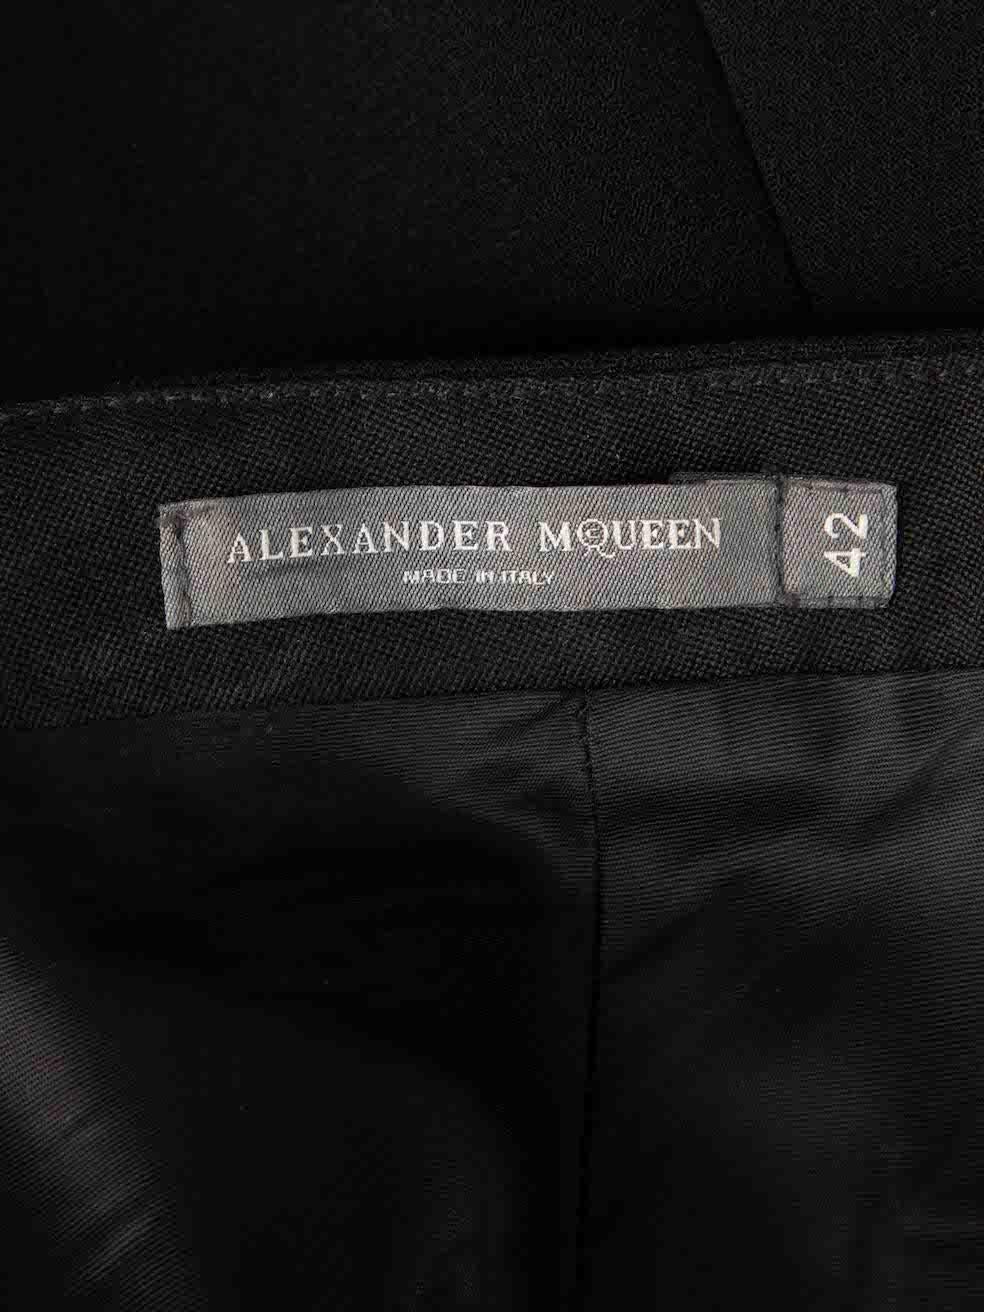 Women's Alexander McQueen Black A-line Knee Length Skirt Size M